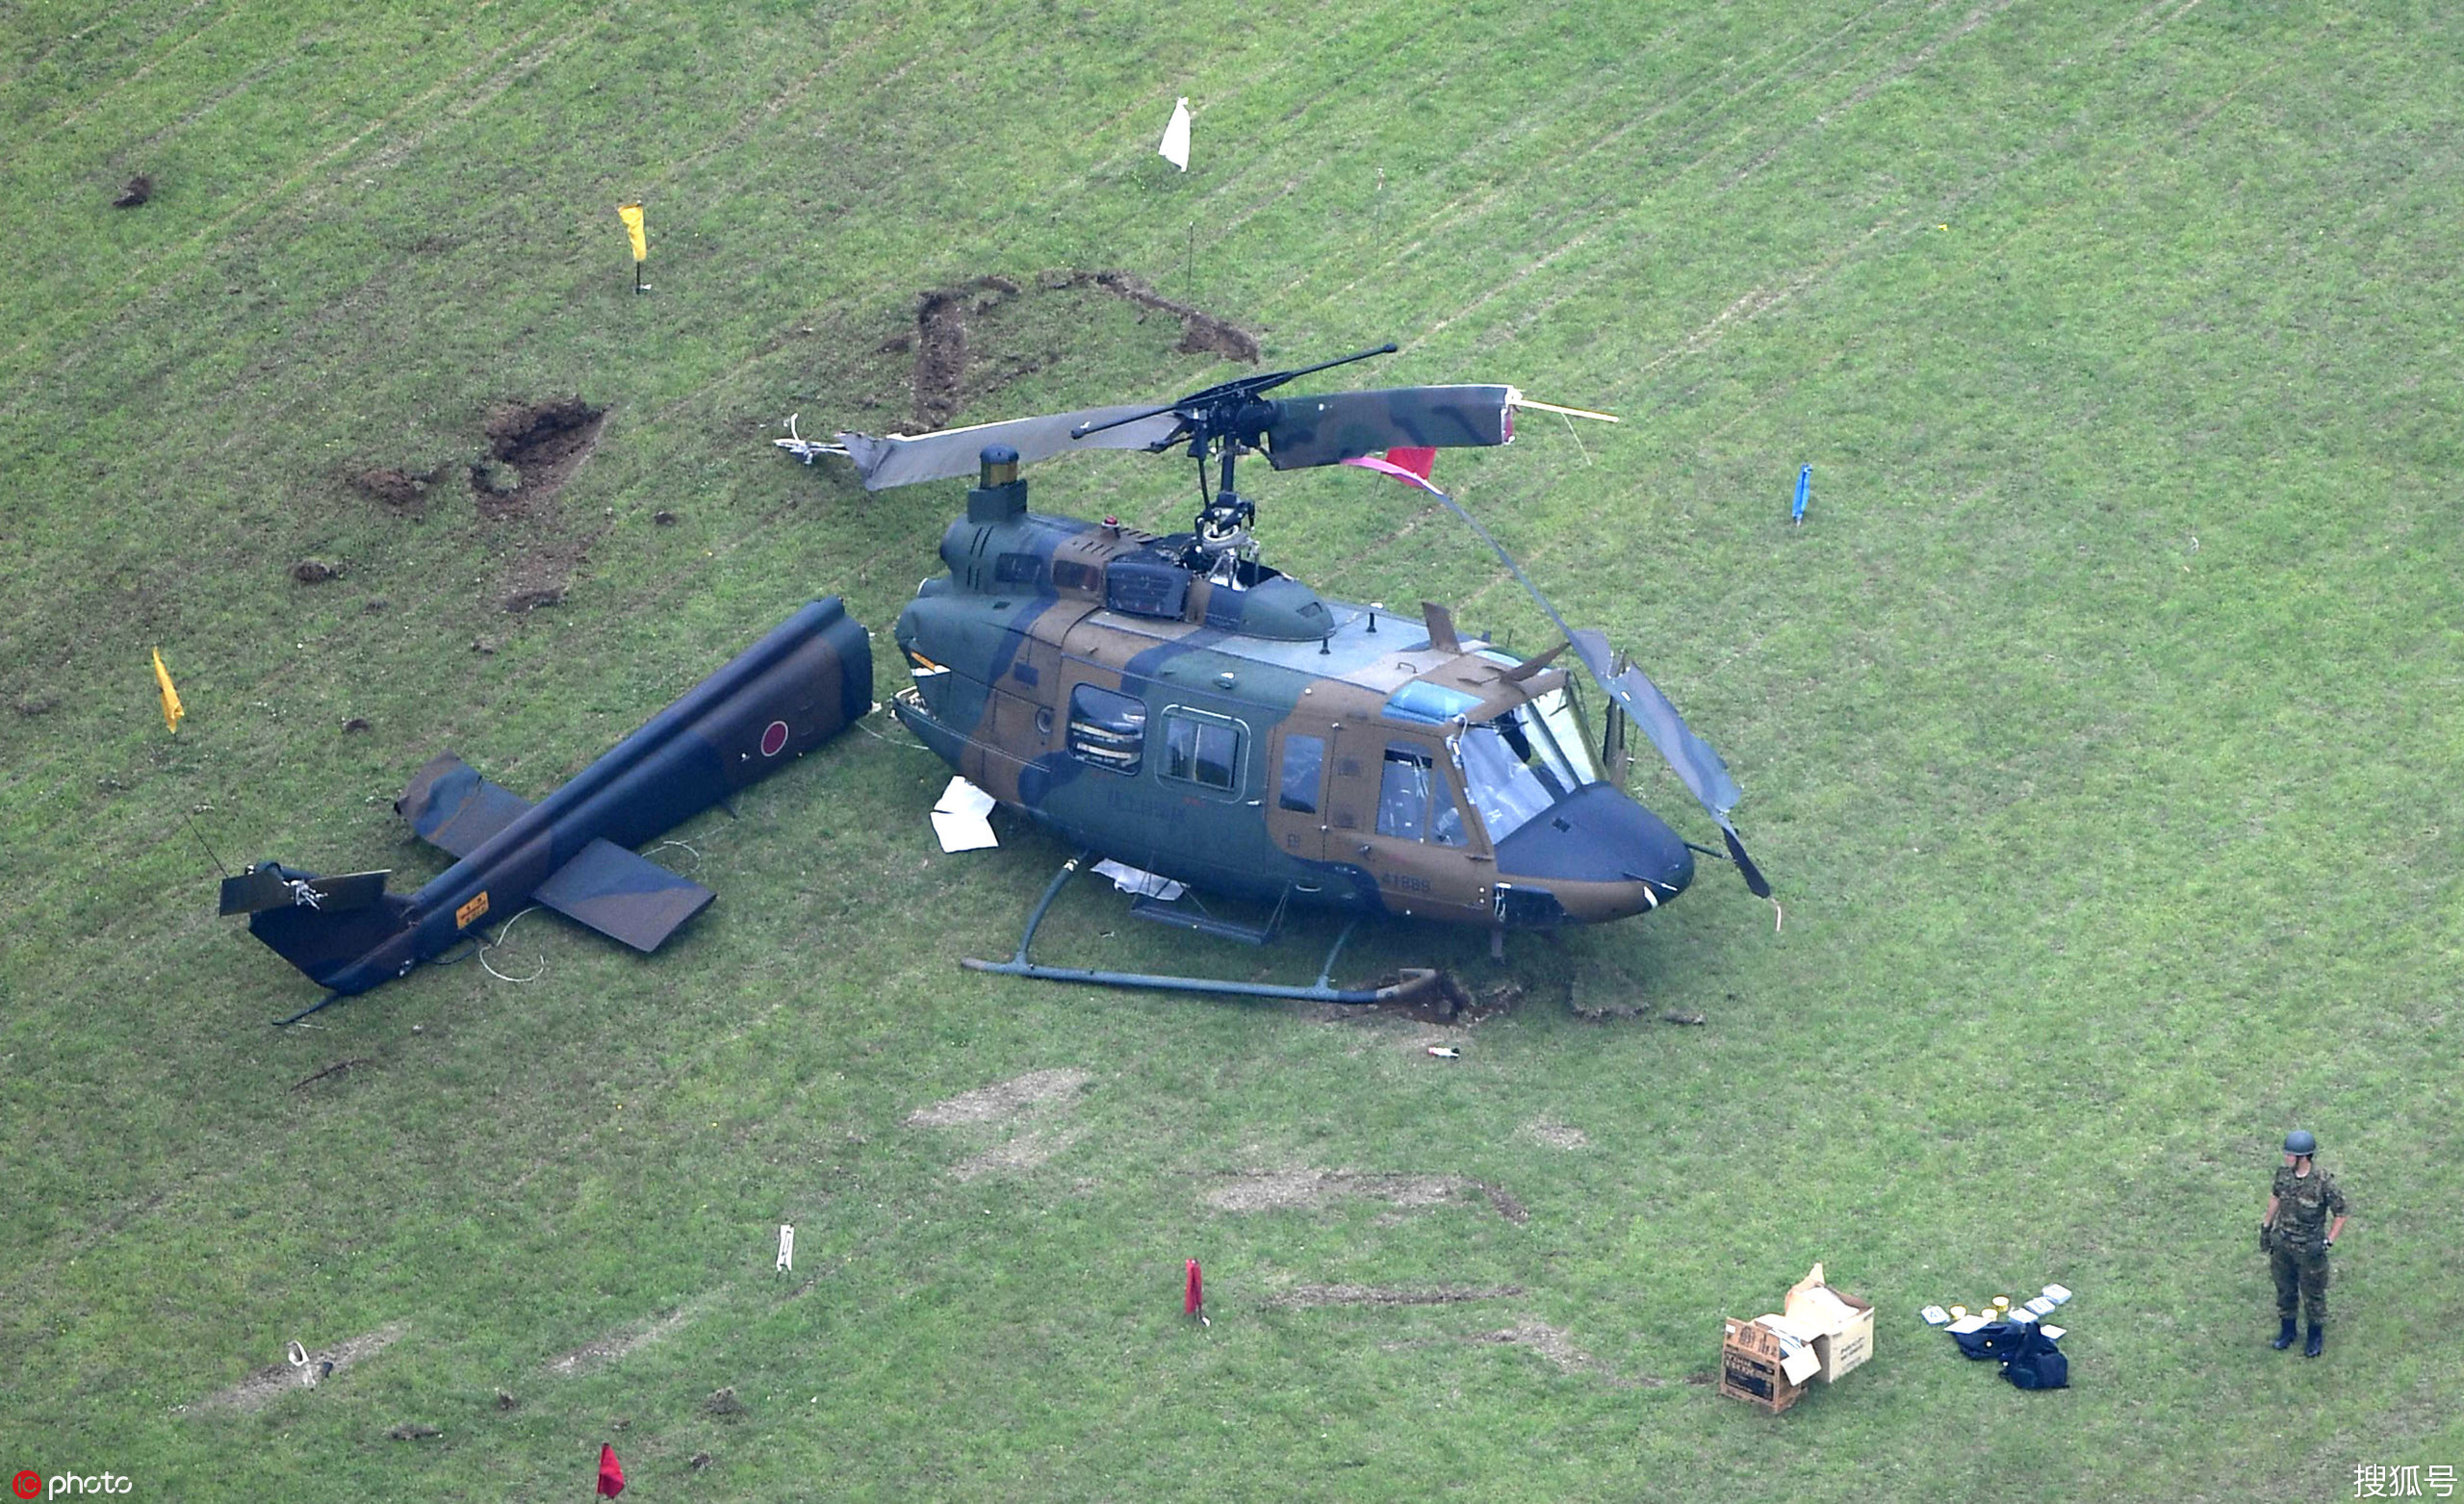 日本陆上自卫队一架直升机降落时坠毁 尾翼折断